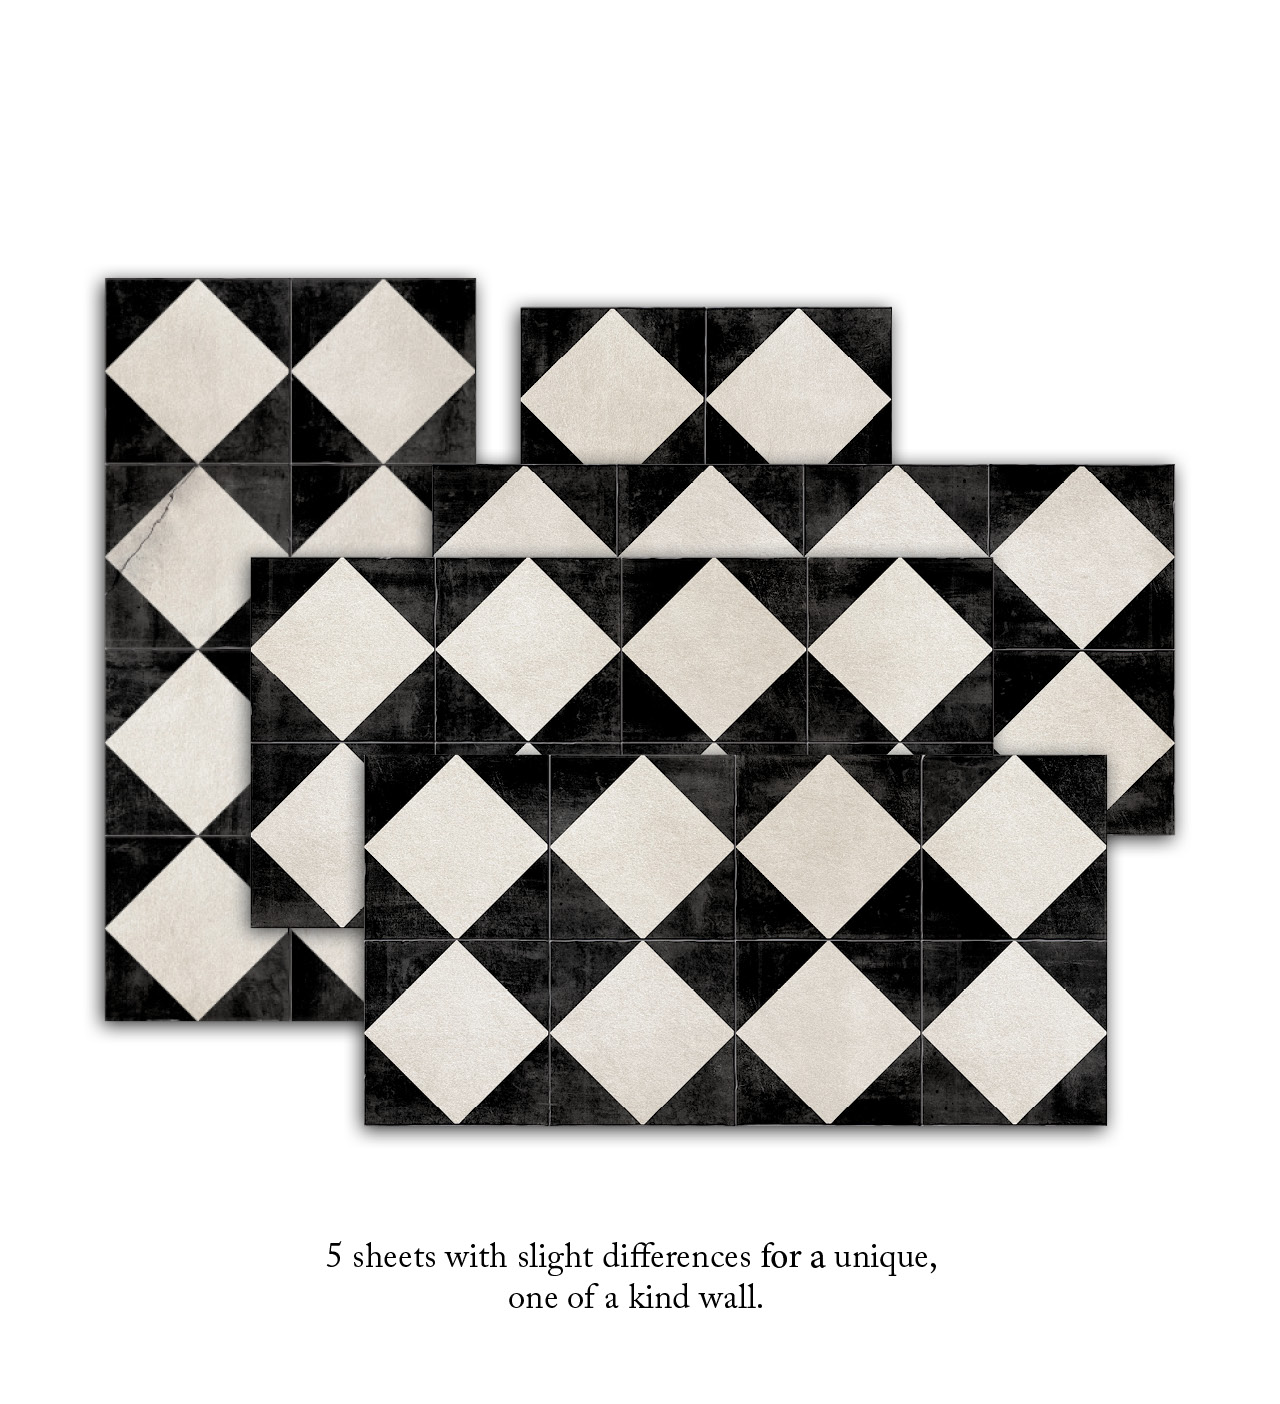 Gambit Chess  KAMI – Beija Wall Paper Image